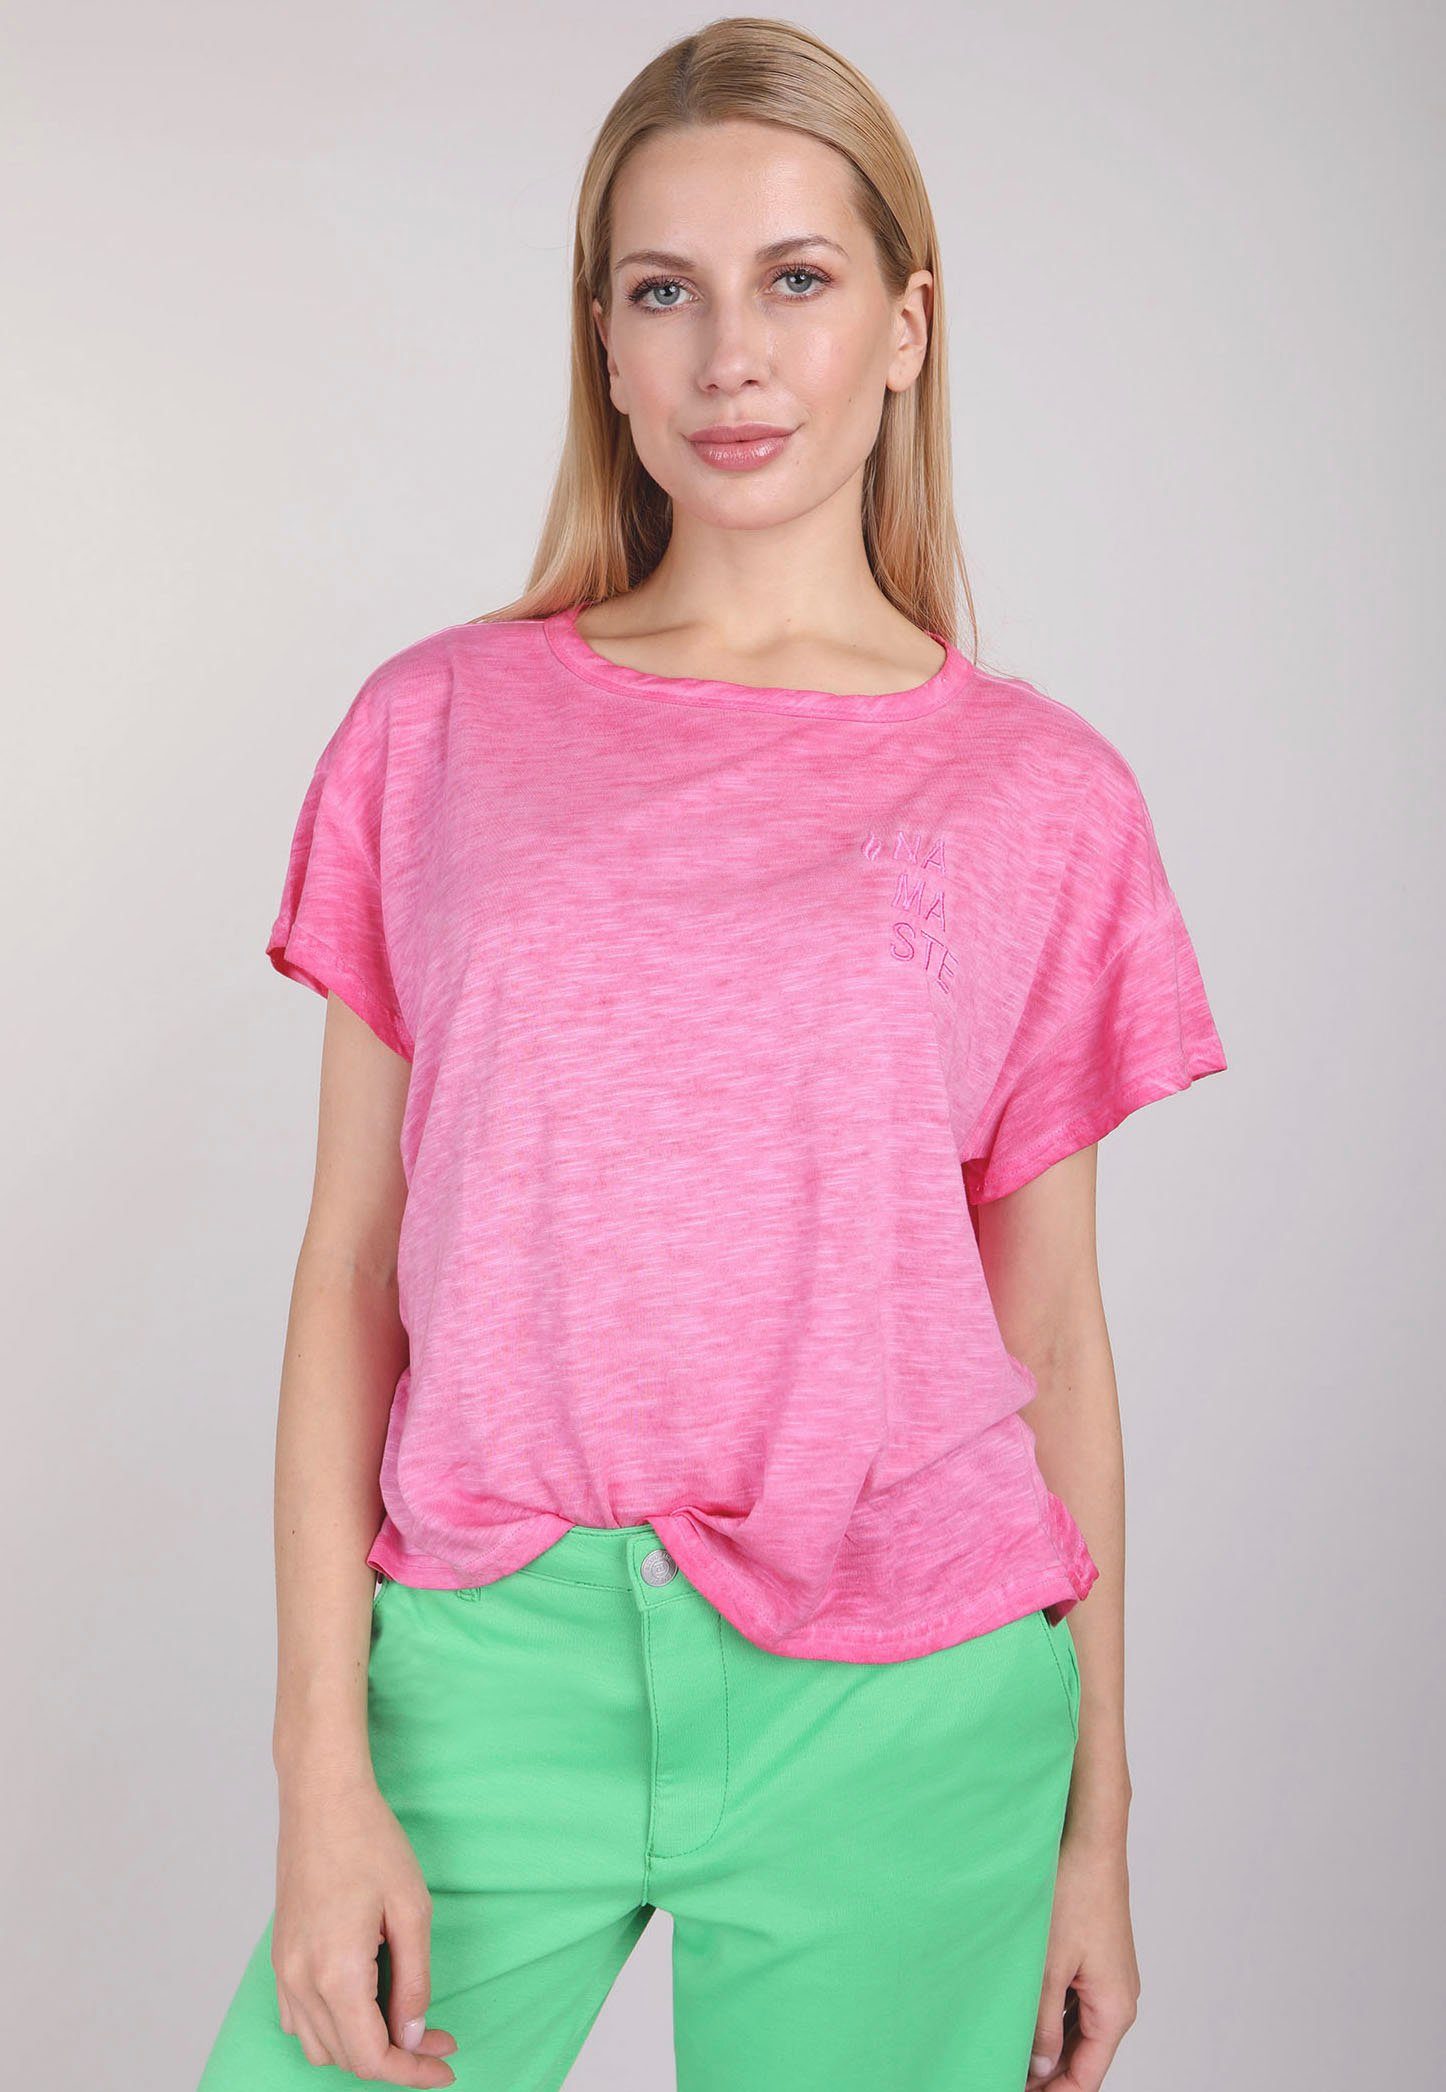 Klicken Sie hier für Informationen zu BLUE FIRE pink Frontdruck T-Shirt vorne mit TEENA kleinem